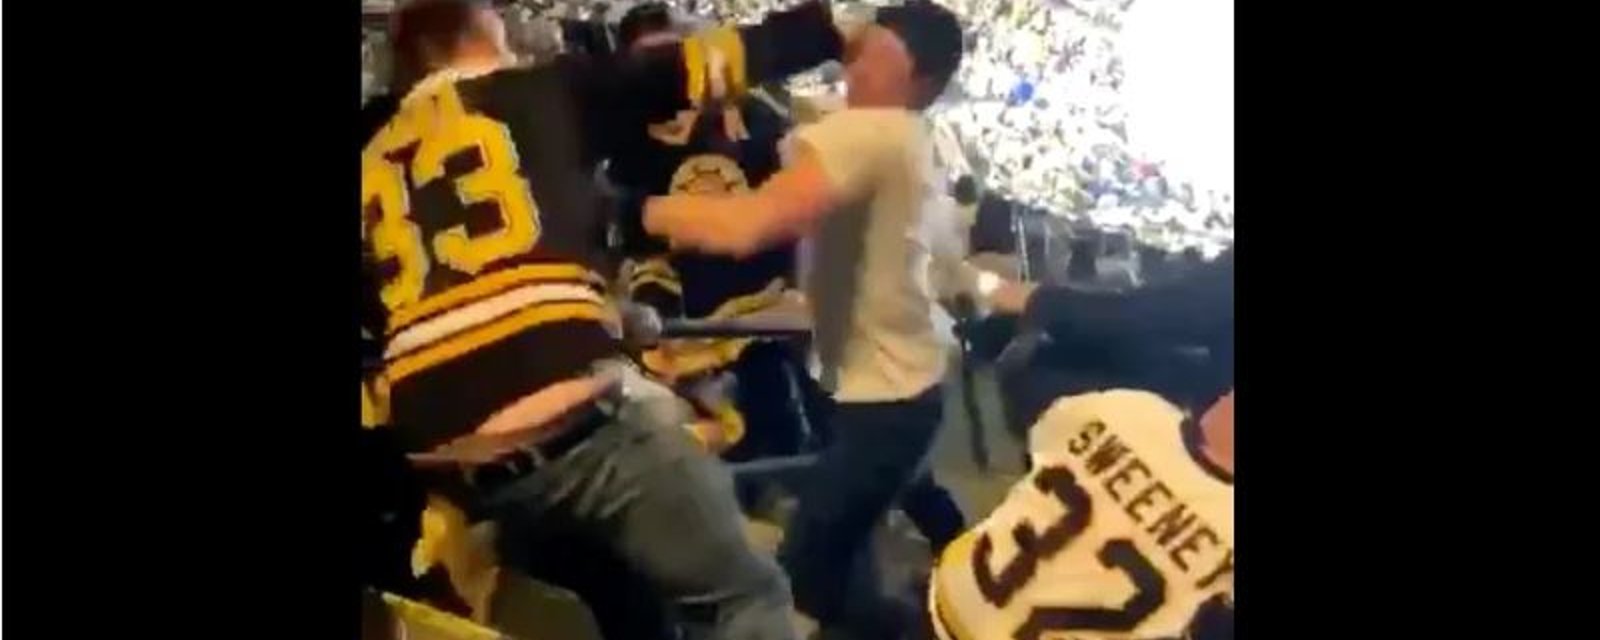 Une violente bagarre éclate dans les gradins entre partisans des Bruins!